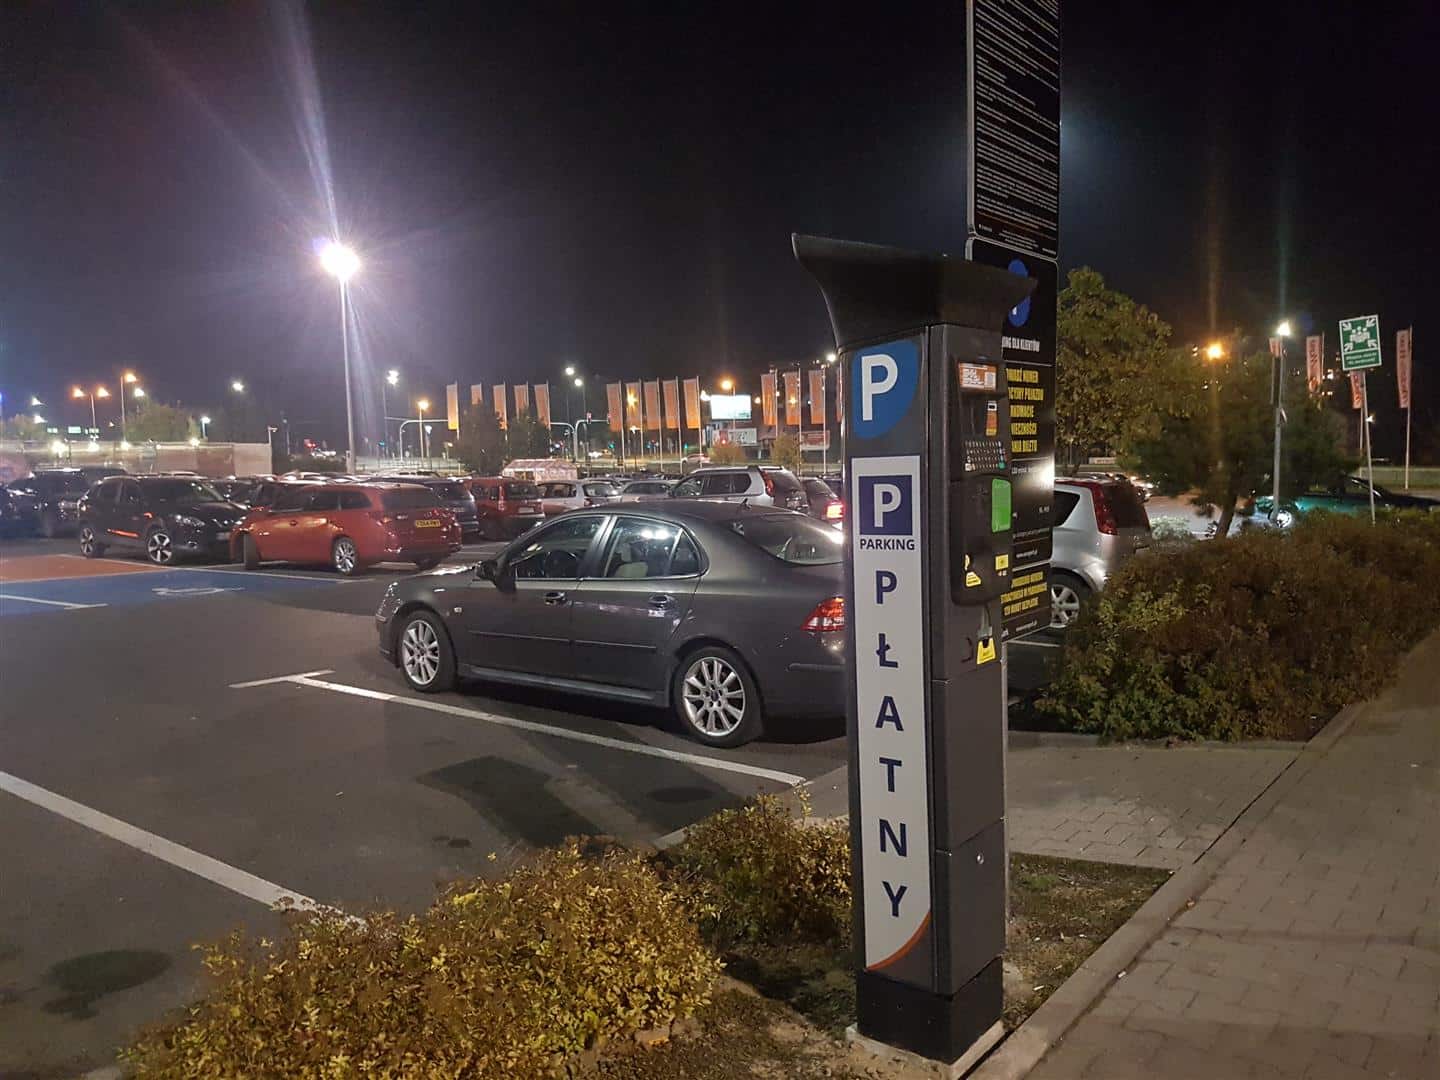 Parking przed Auchan i Media Markt jest już płatny!